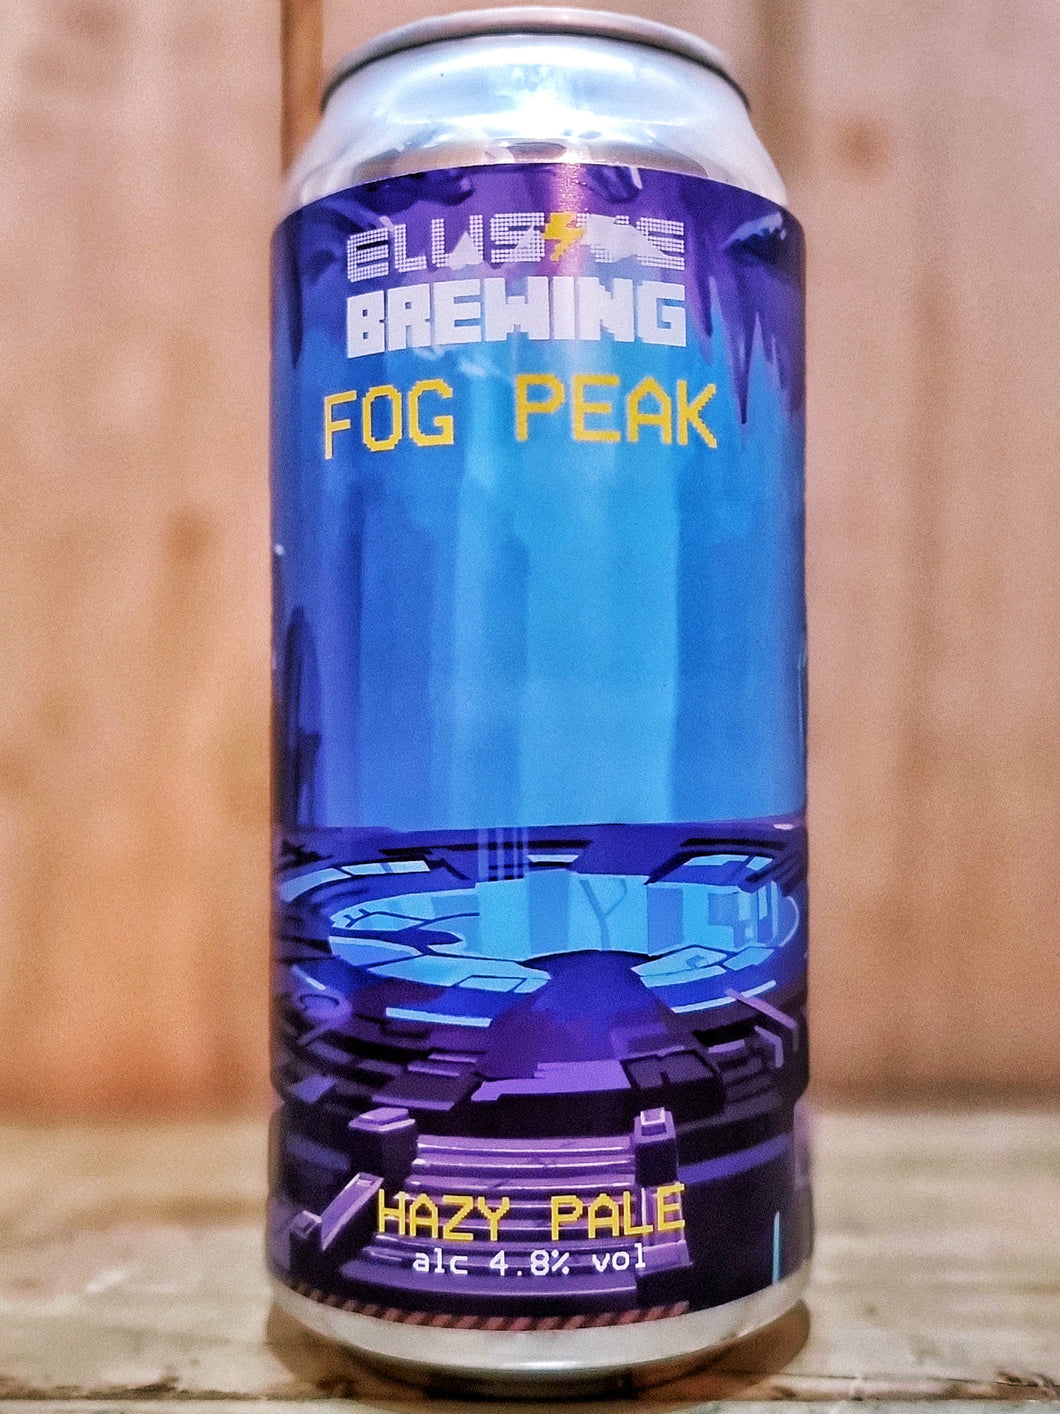 Elusive Brewing - Fog Peak